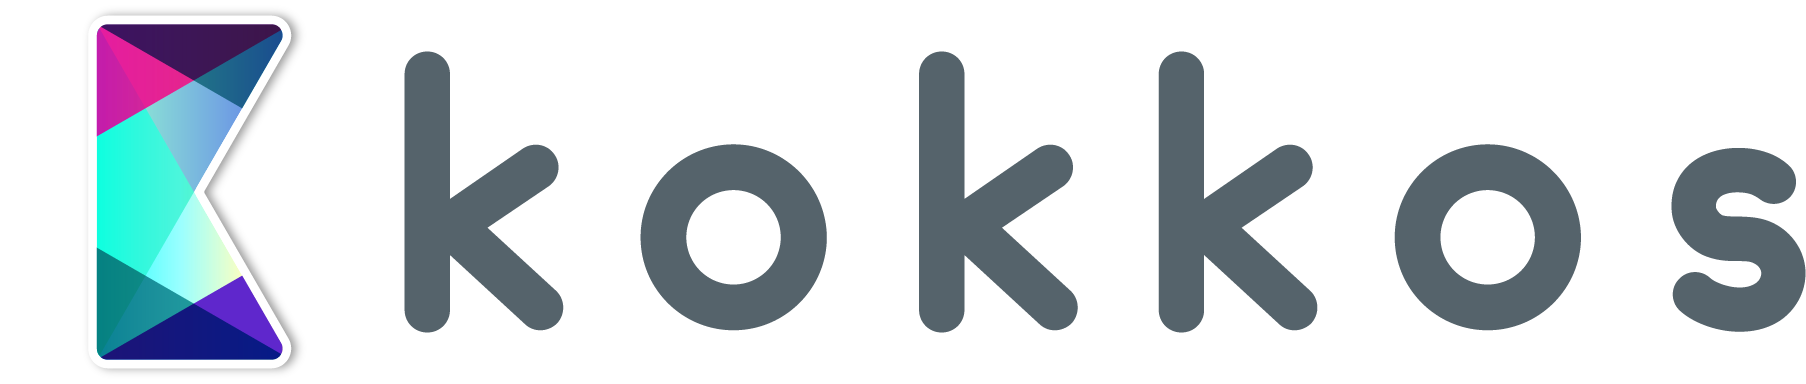 Kokkos logo